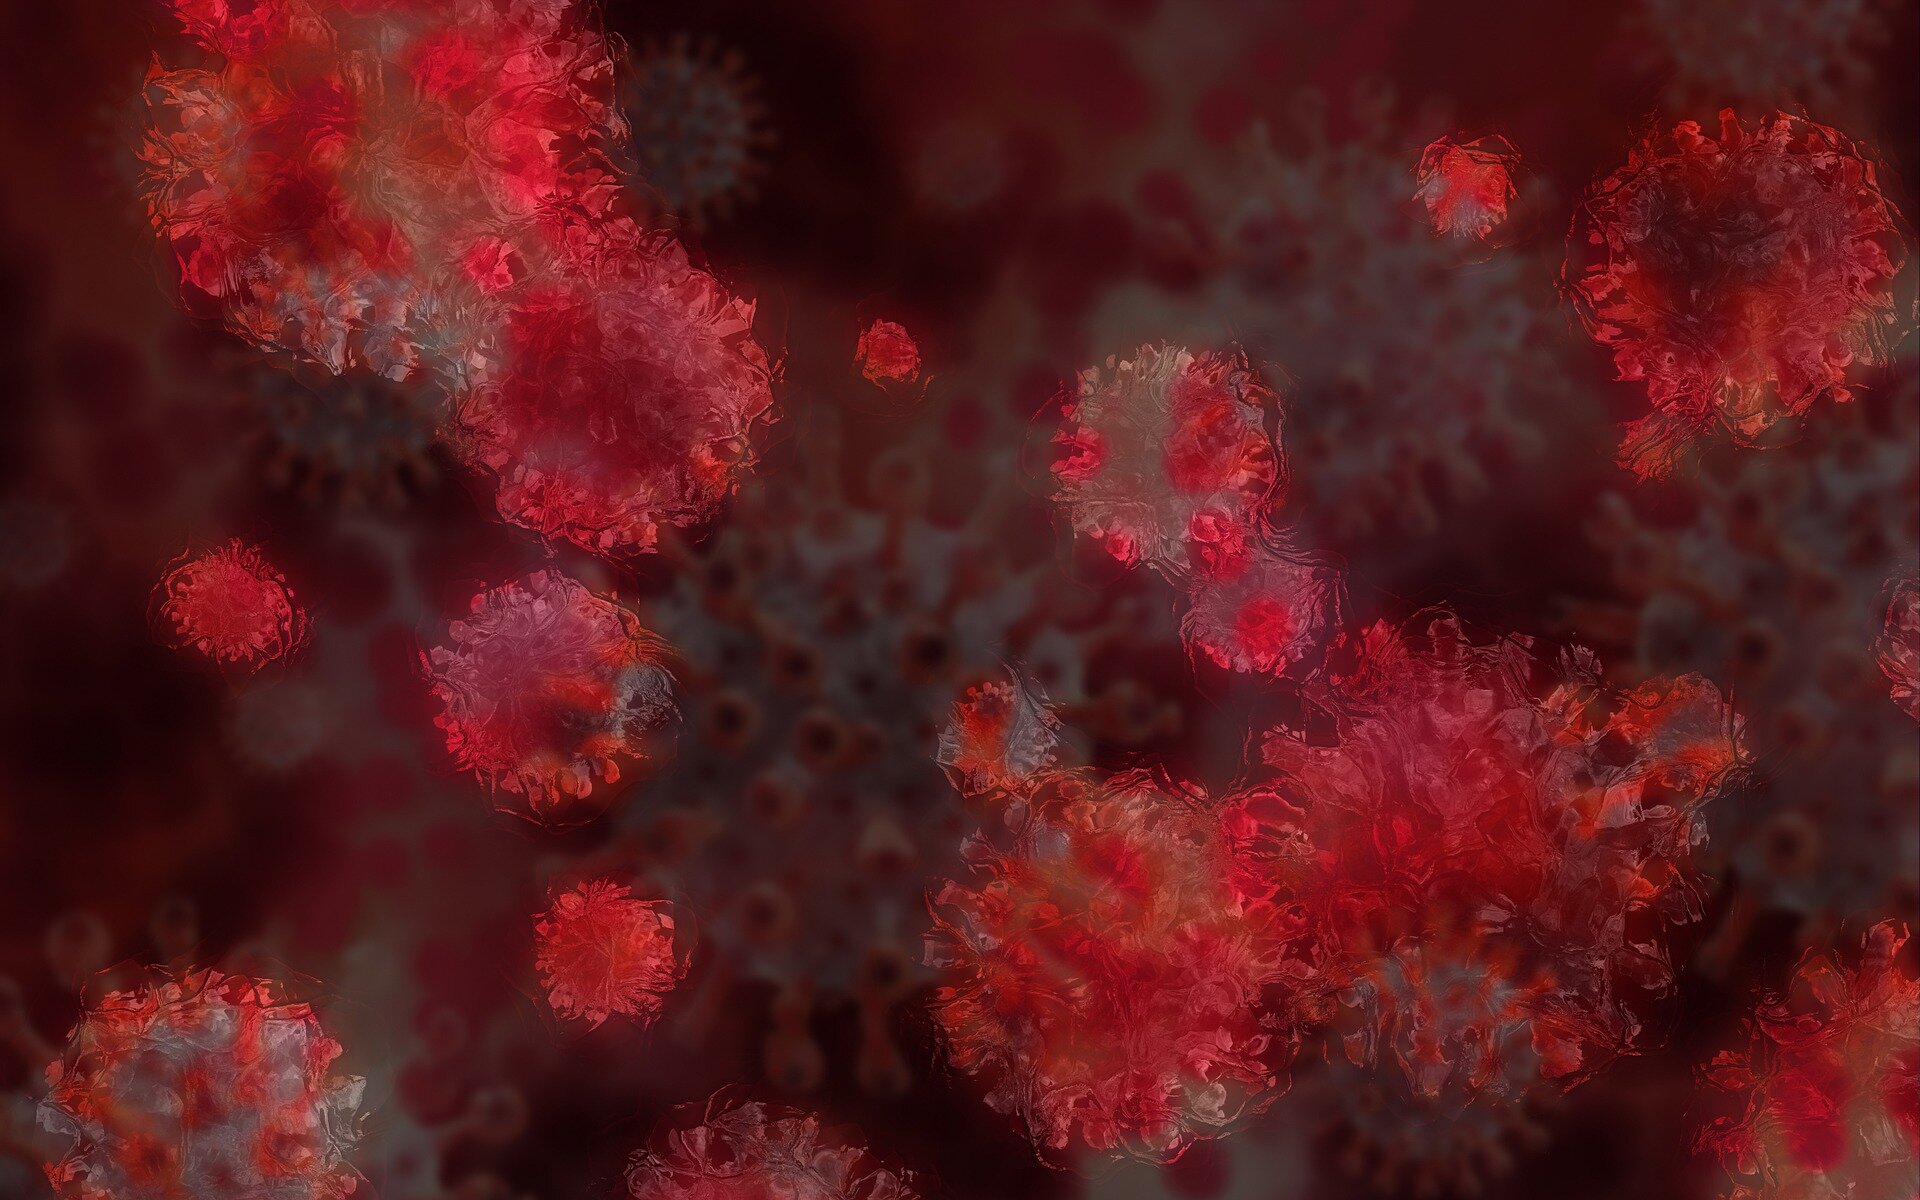 Científicos sudafricanos monitorean la nueva variante del coronavirus